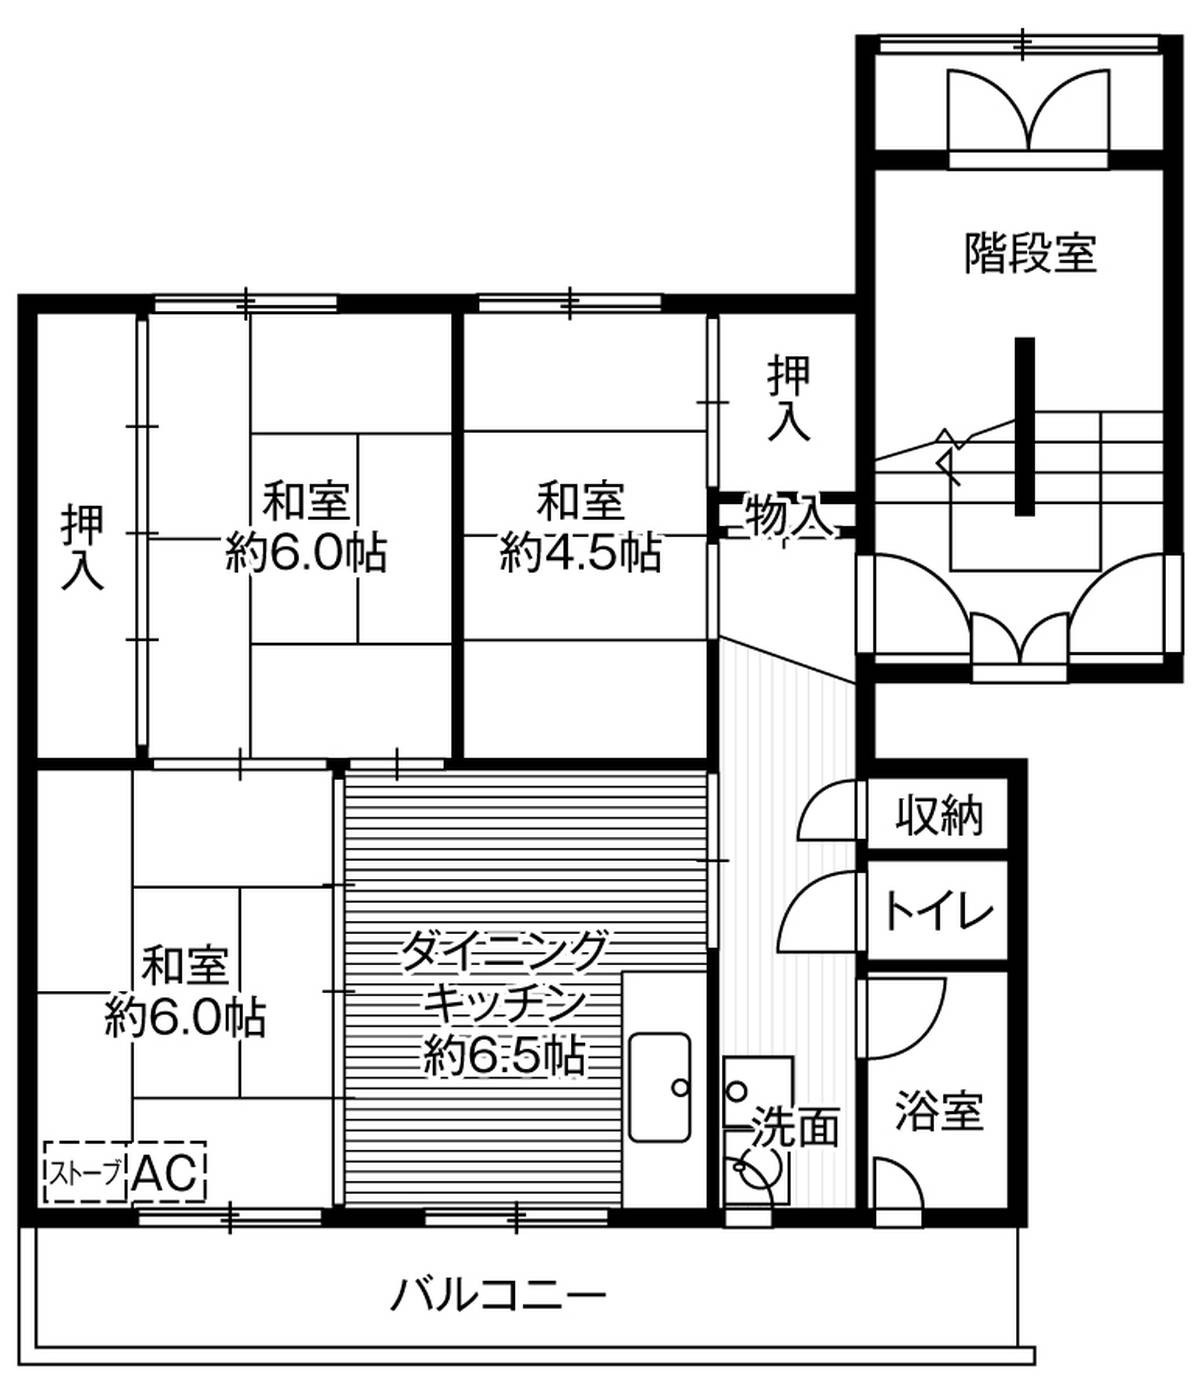 3DK floorplan of Village House Kanahori in Hakodate-shi